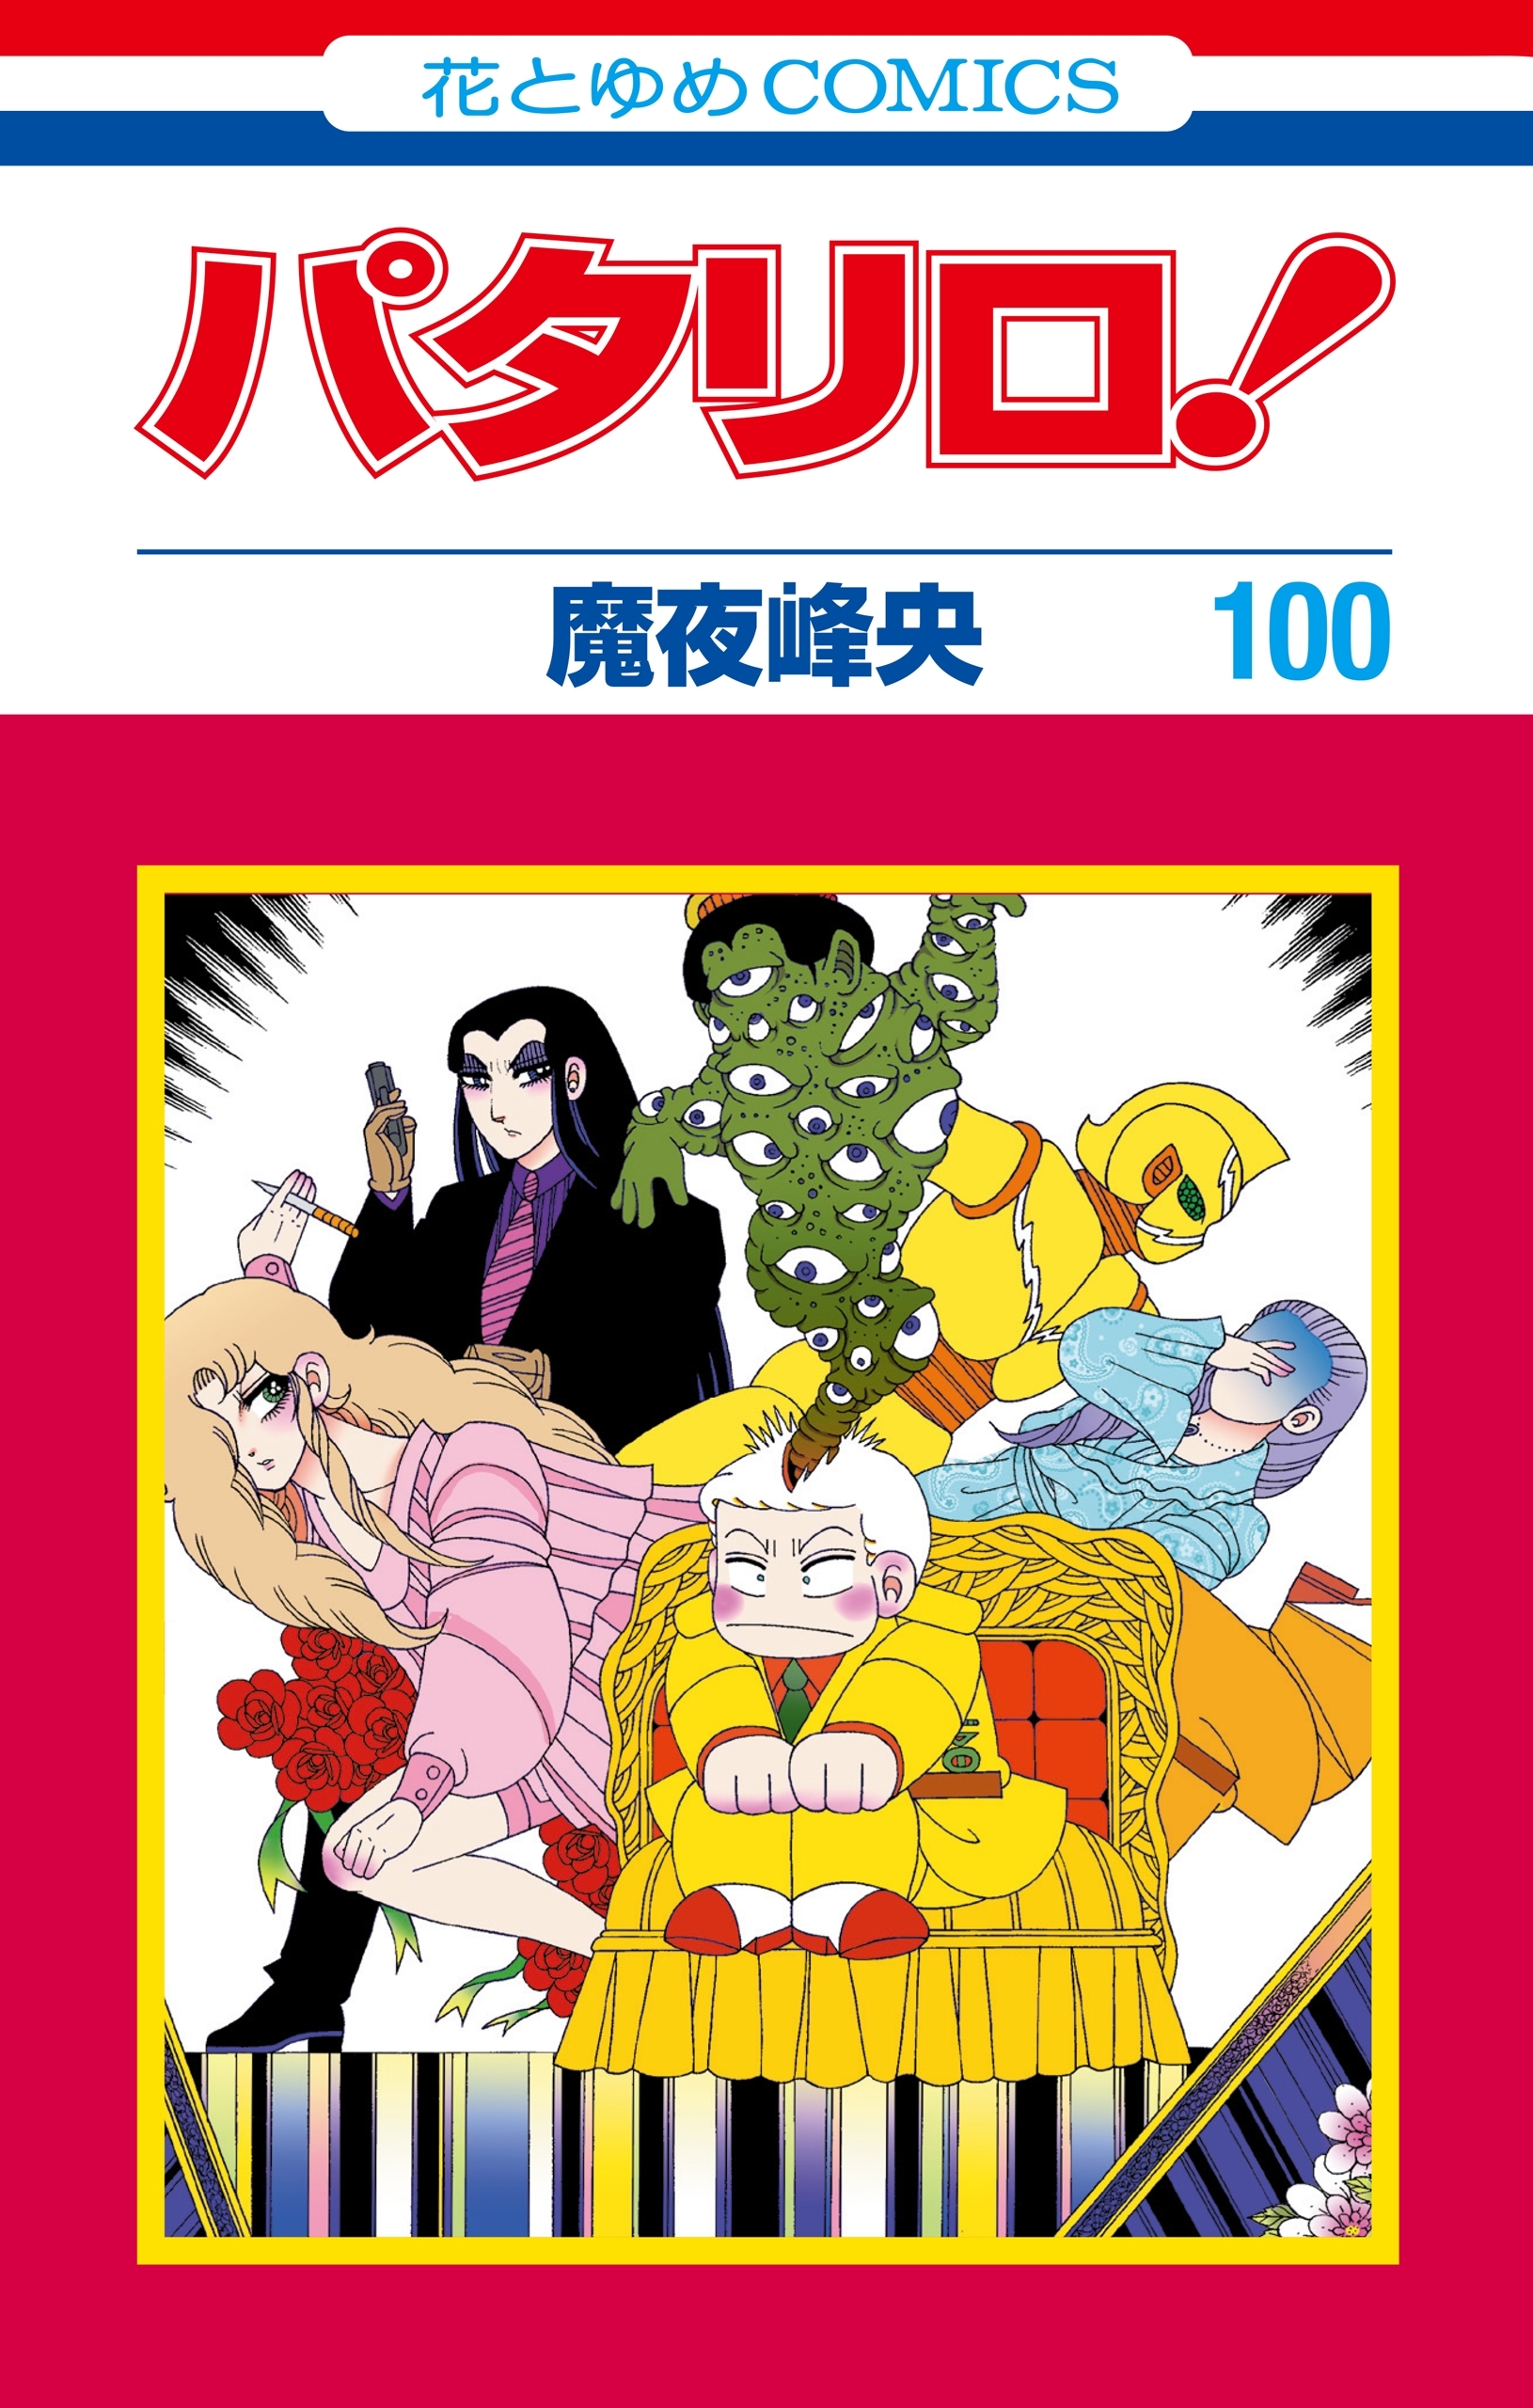 パタリロ 100 花とゆめコミックス版 無料 試し読みなら Amebaマンガ 旧 読書のお時間です